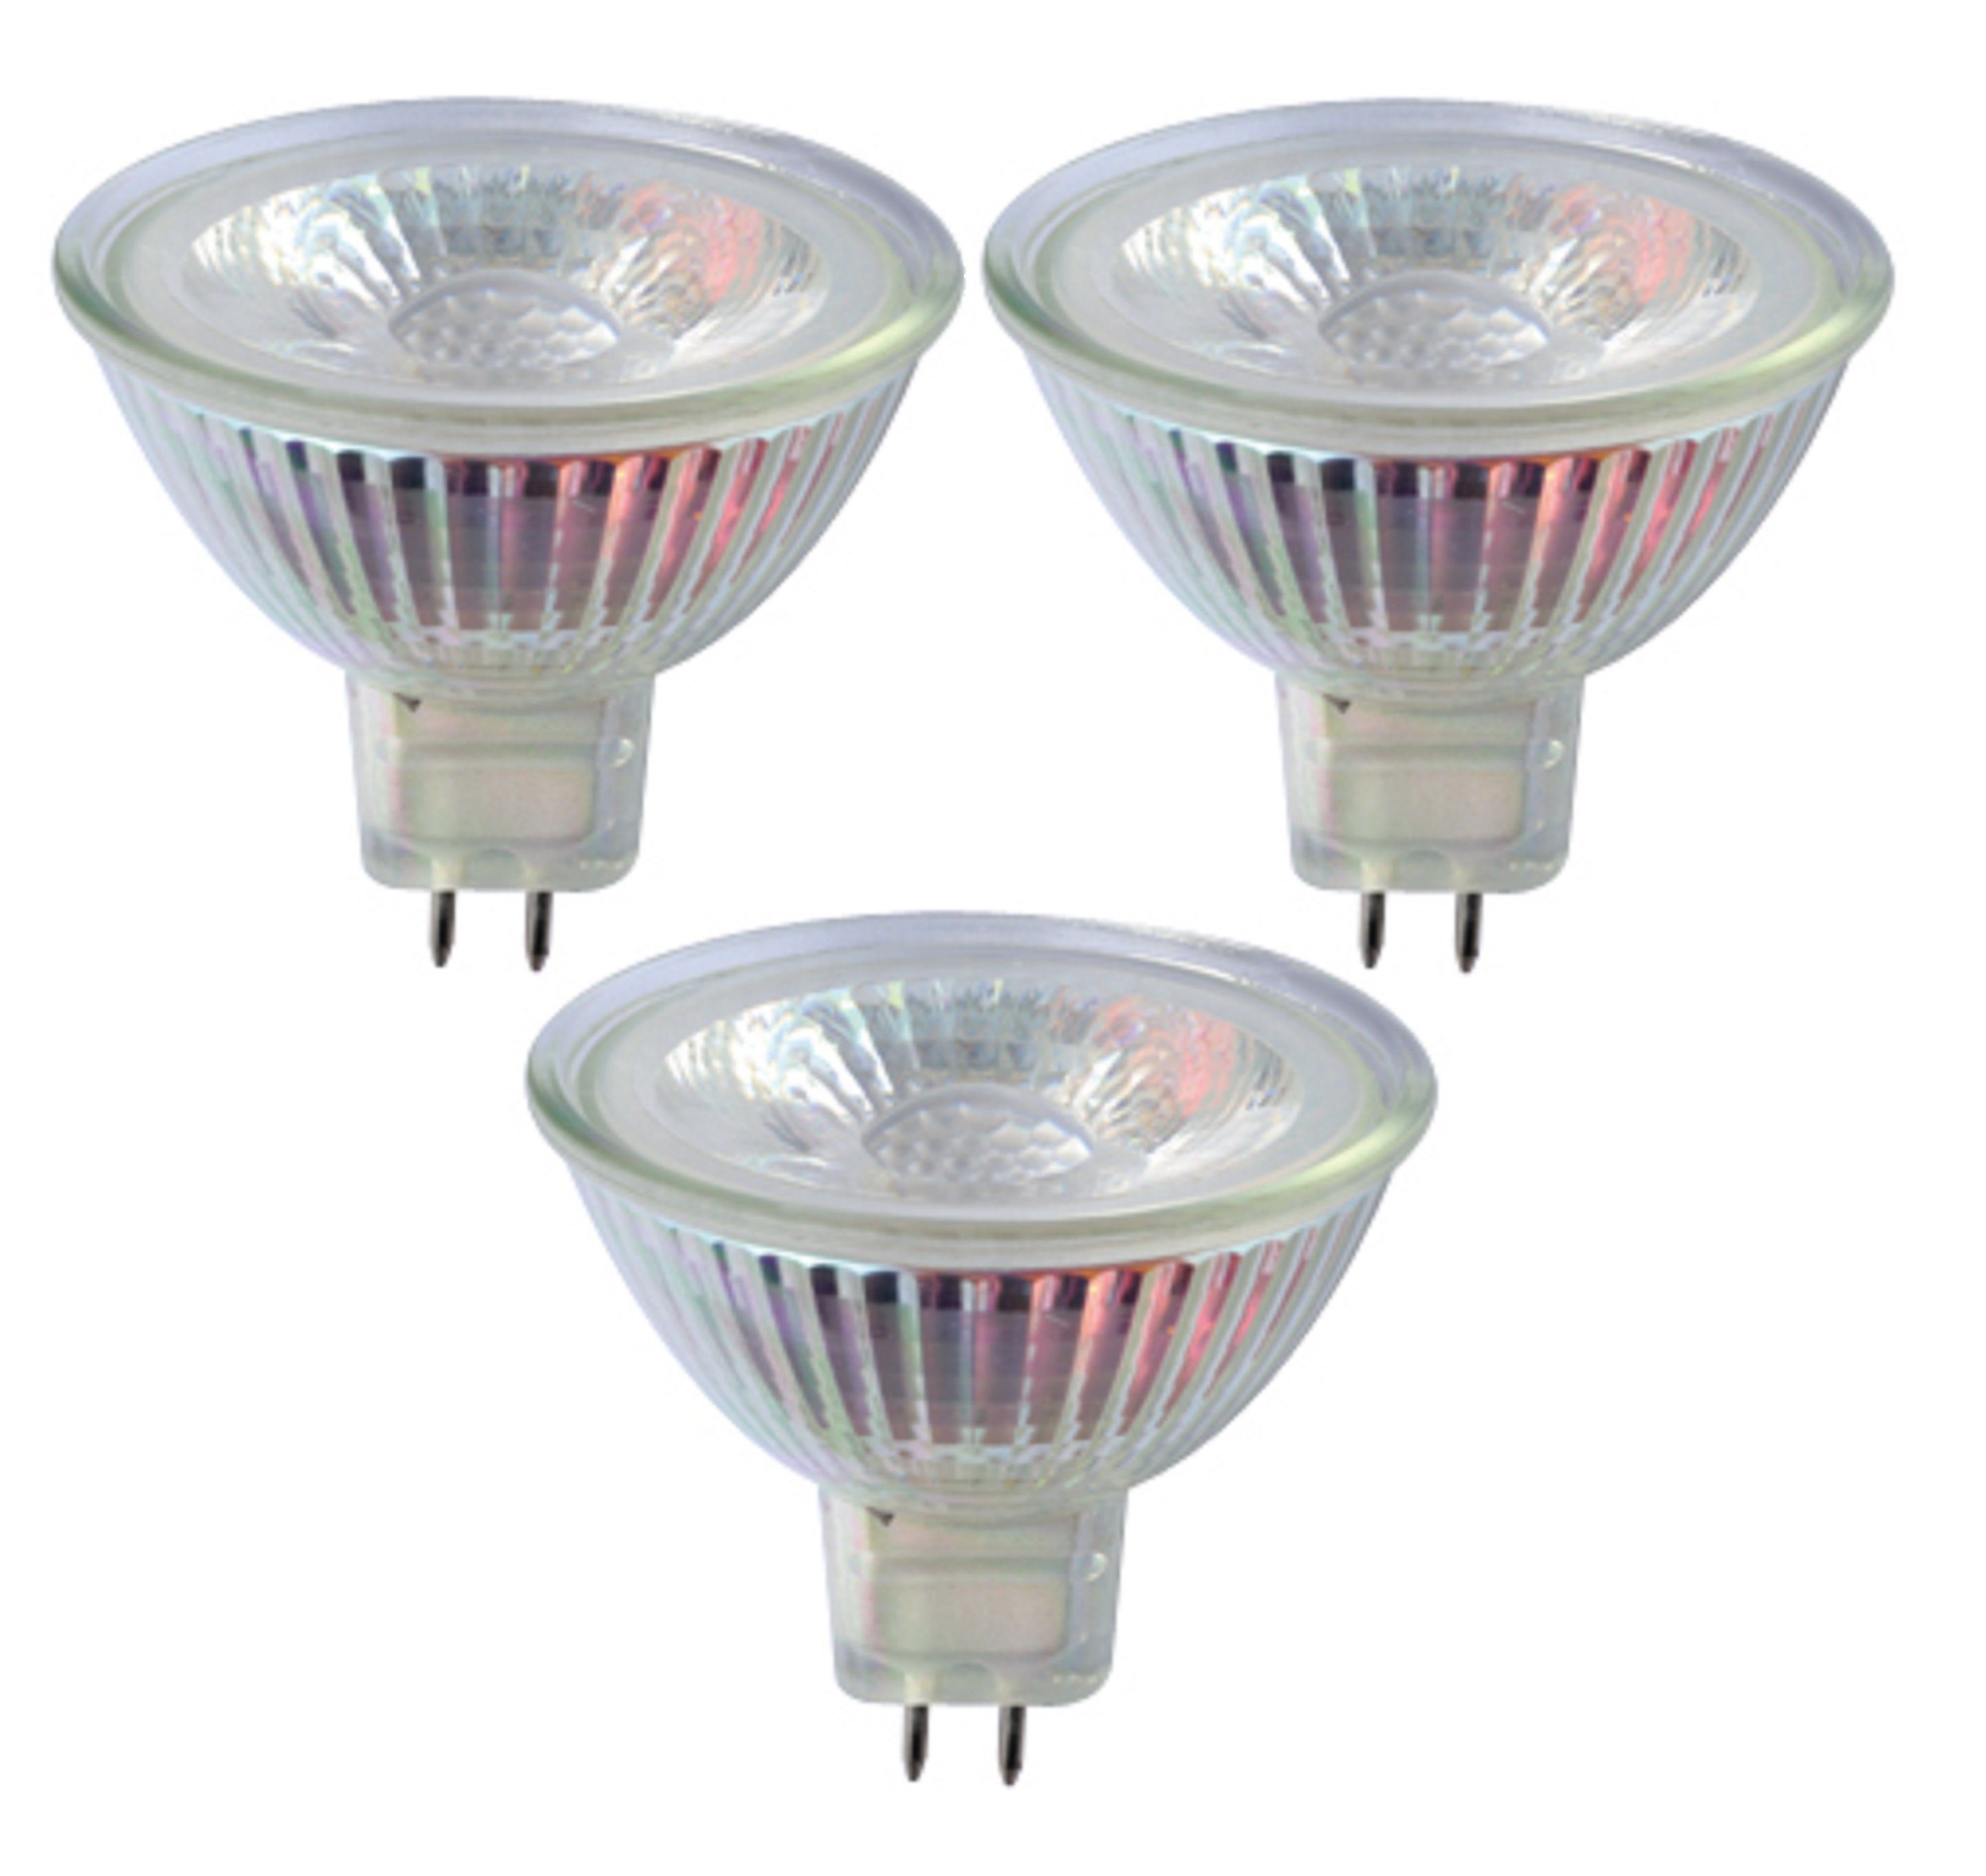 TRANGO LED-Leuchtmittel, 3er Set MR16-NT3 LED Leuchtmittel mit MR16 Fassung  zum Austausch herkömmlicher Halogen Leuchtmittel MR16 I GU5.3 I G4 12 Volt  3000K, 3 St., Glühlampe, Reflektor Lampe, LED Birnen